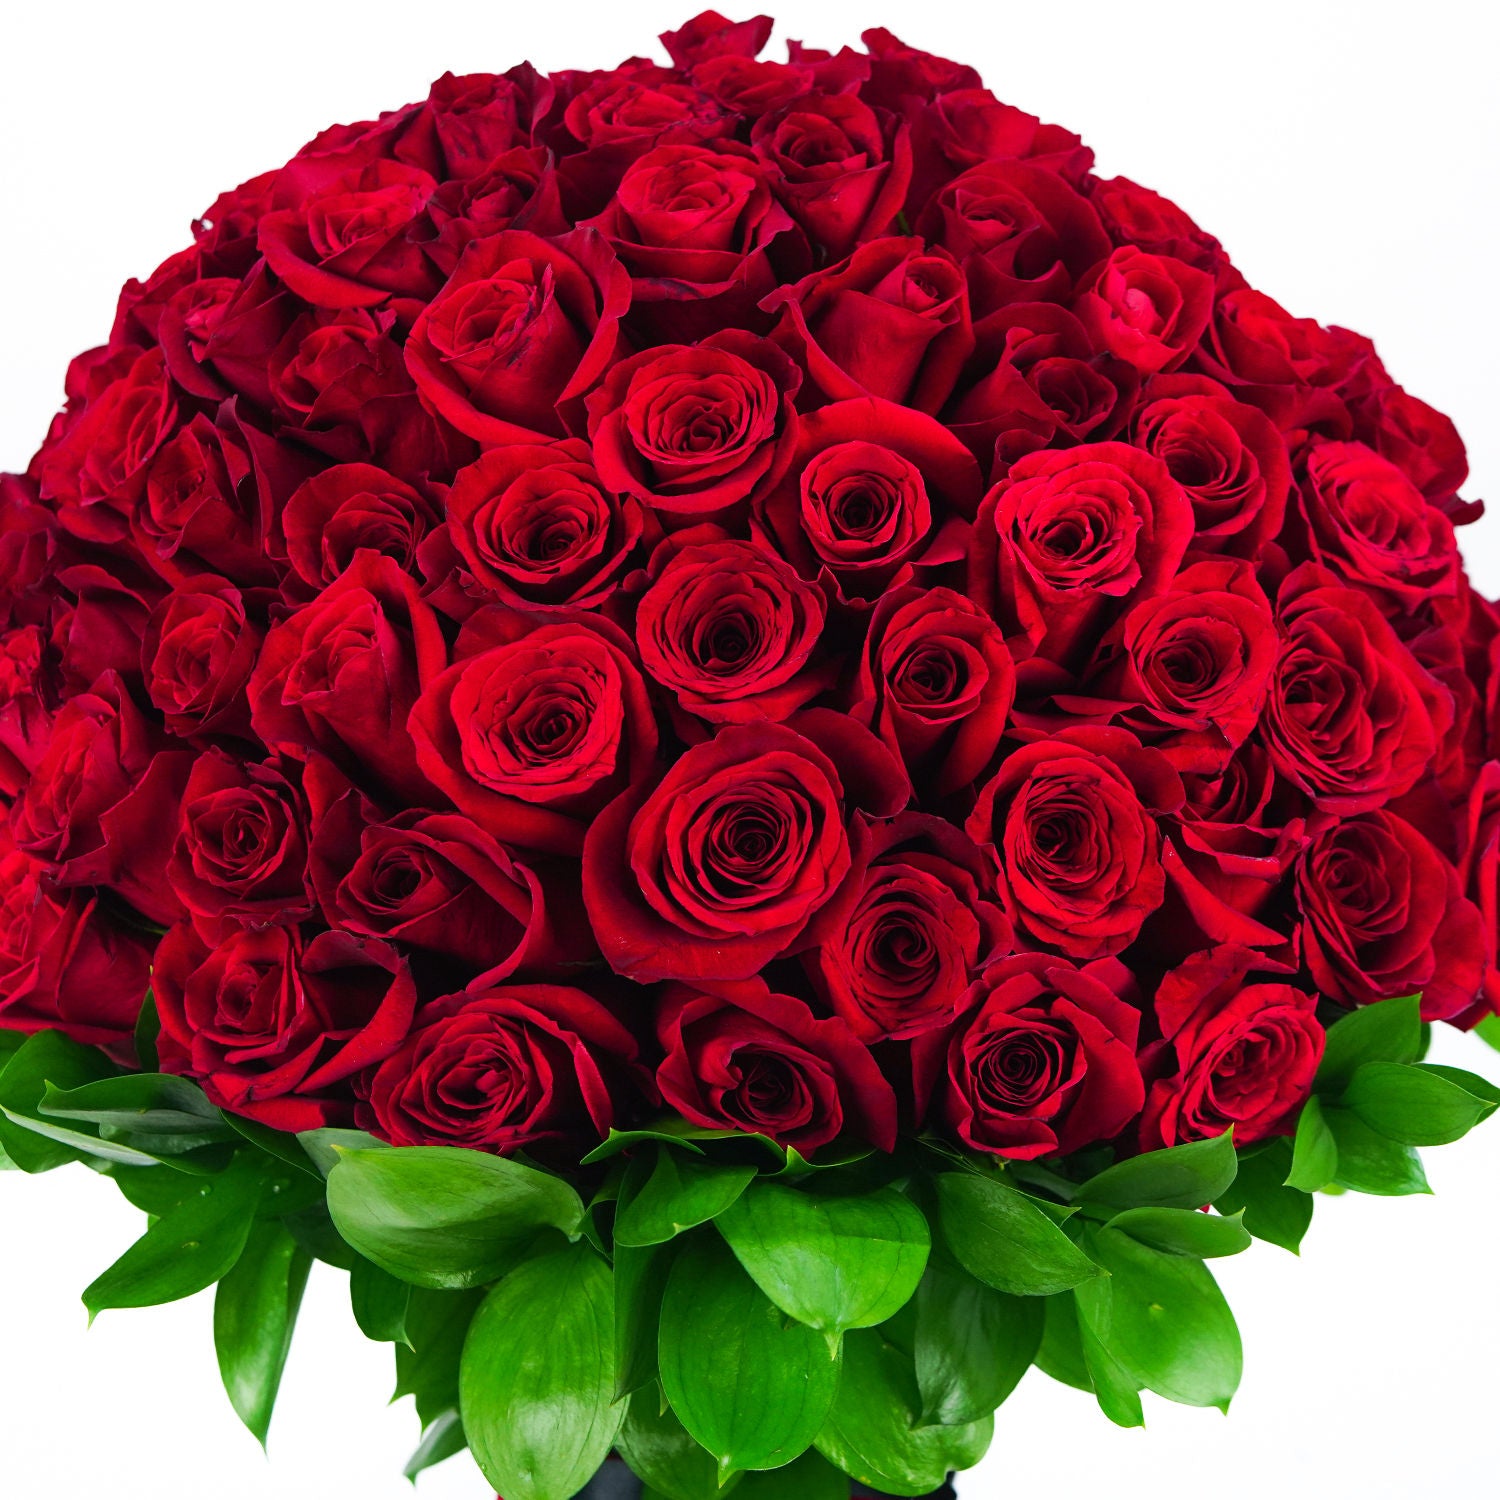 باقة 150 وردة جوري حمراء مربوطة بشريط أحمر